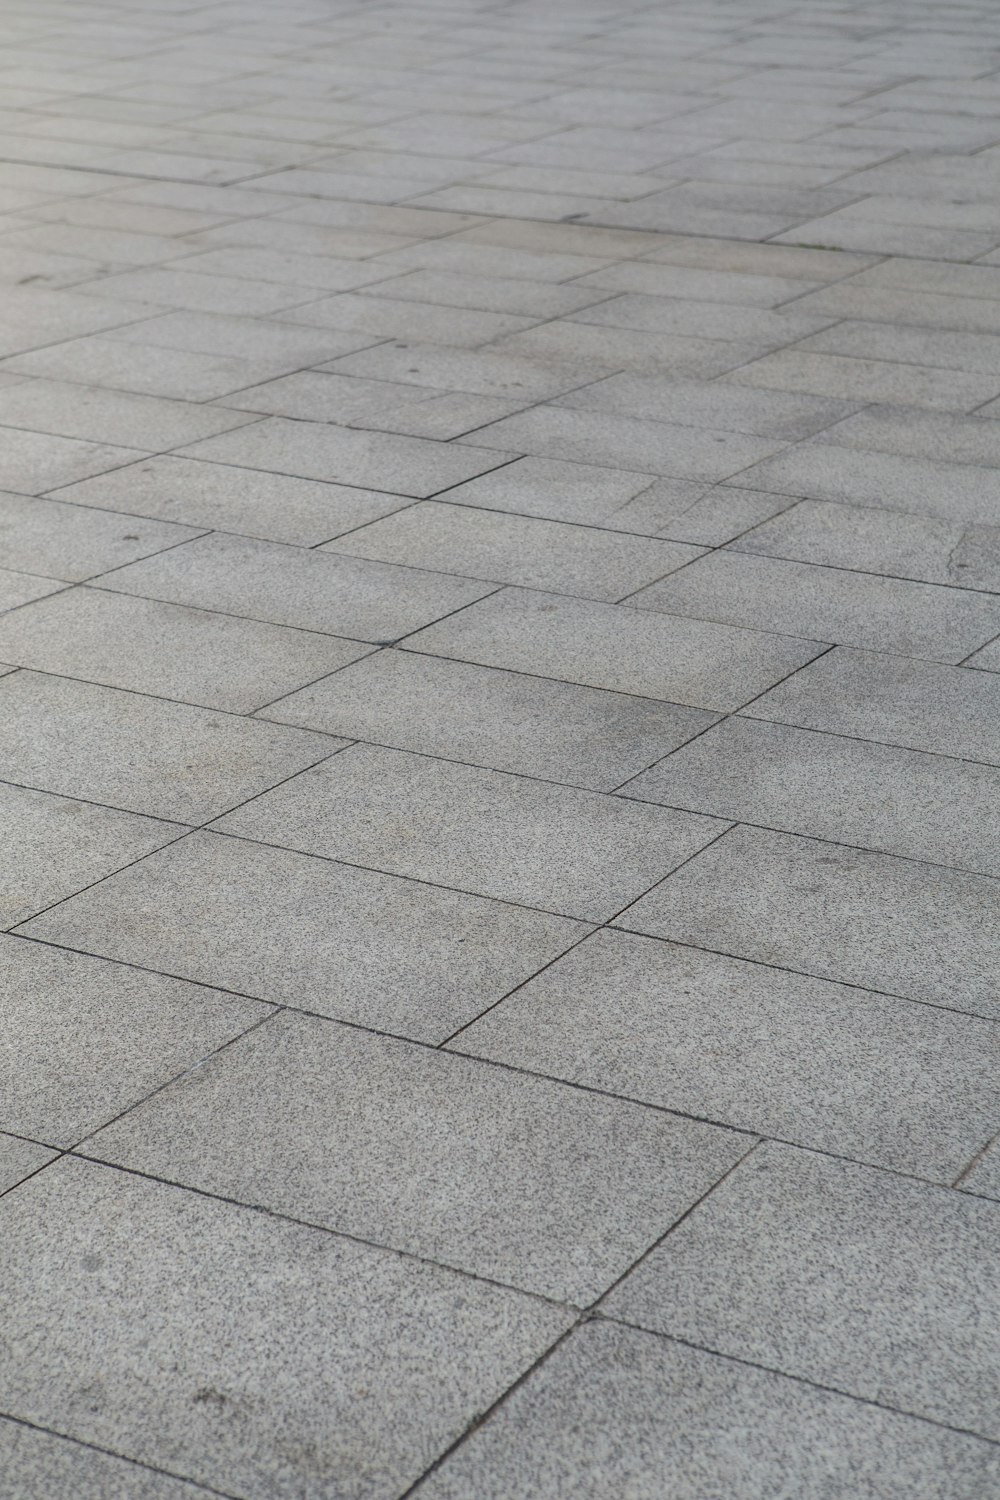 photo of gray floor tiles